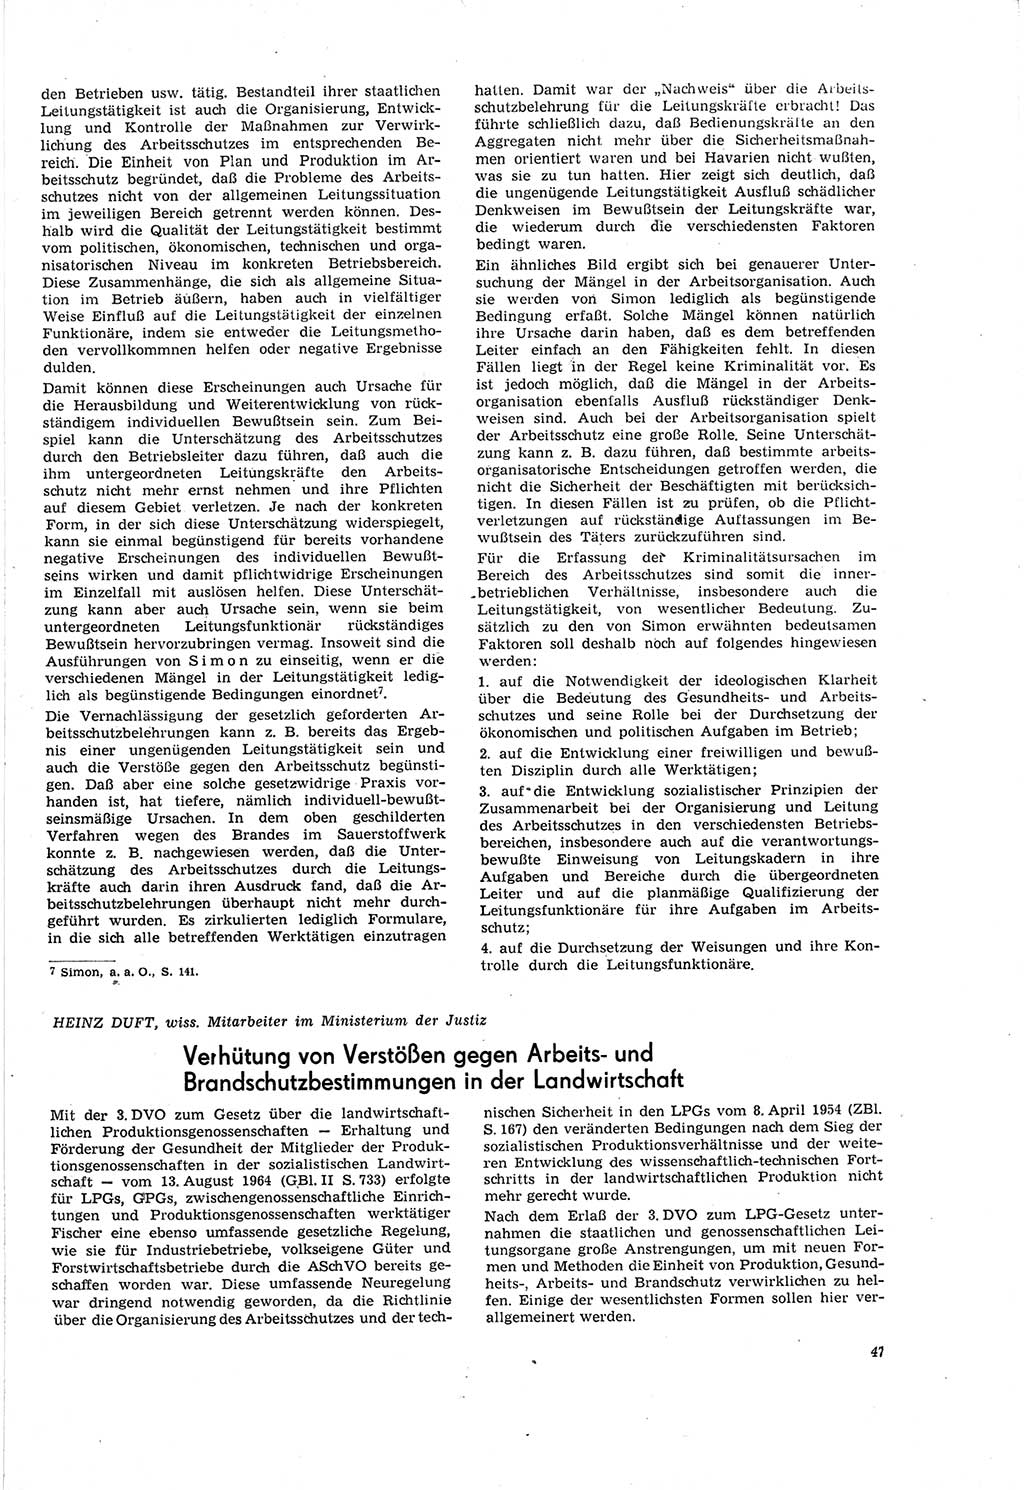 Neue Justiz (NJ), Zeitschrift für Recht und Rechtswissenschaft [Deutsche Demokratische Republik (DDR)], 20. Jahrgang 1966, Seite 47 (NJ DDR 1966, S. 47)